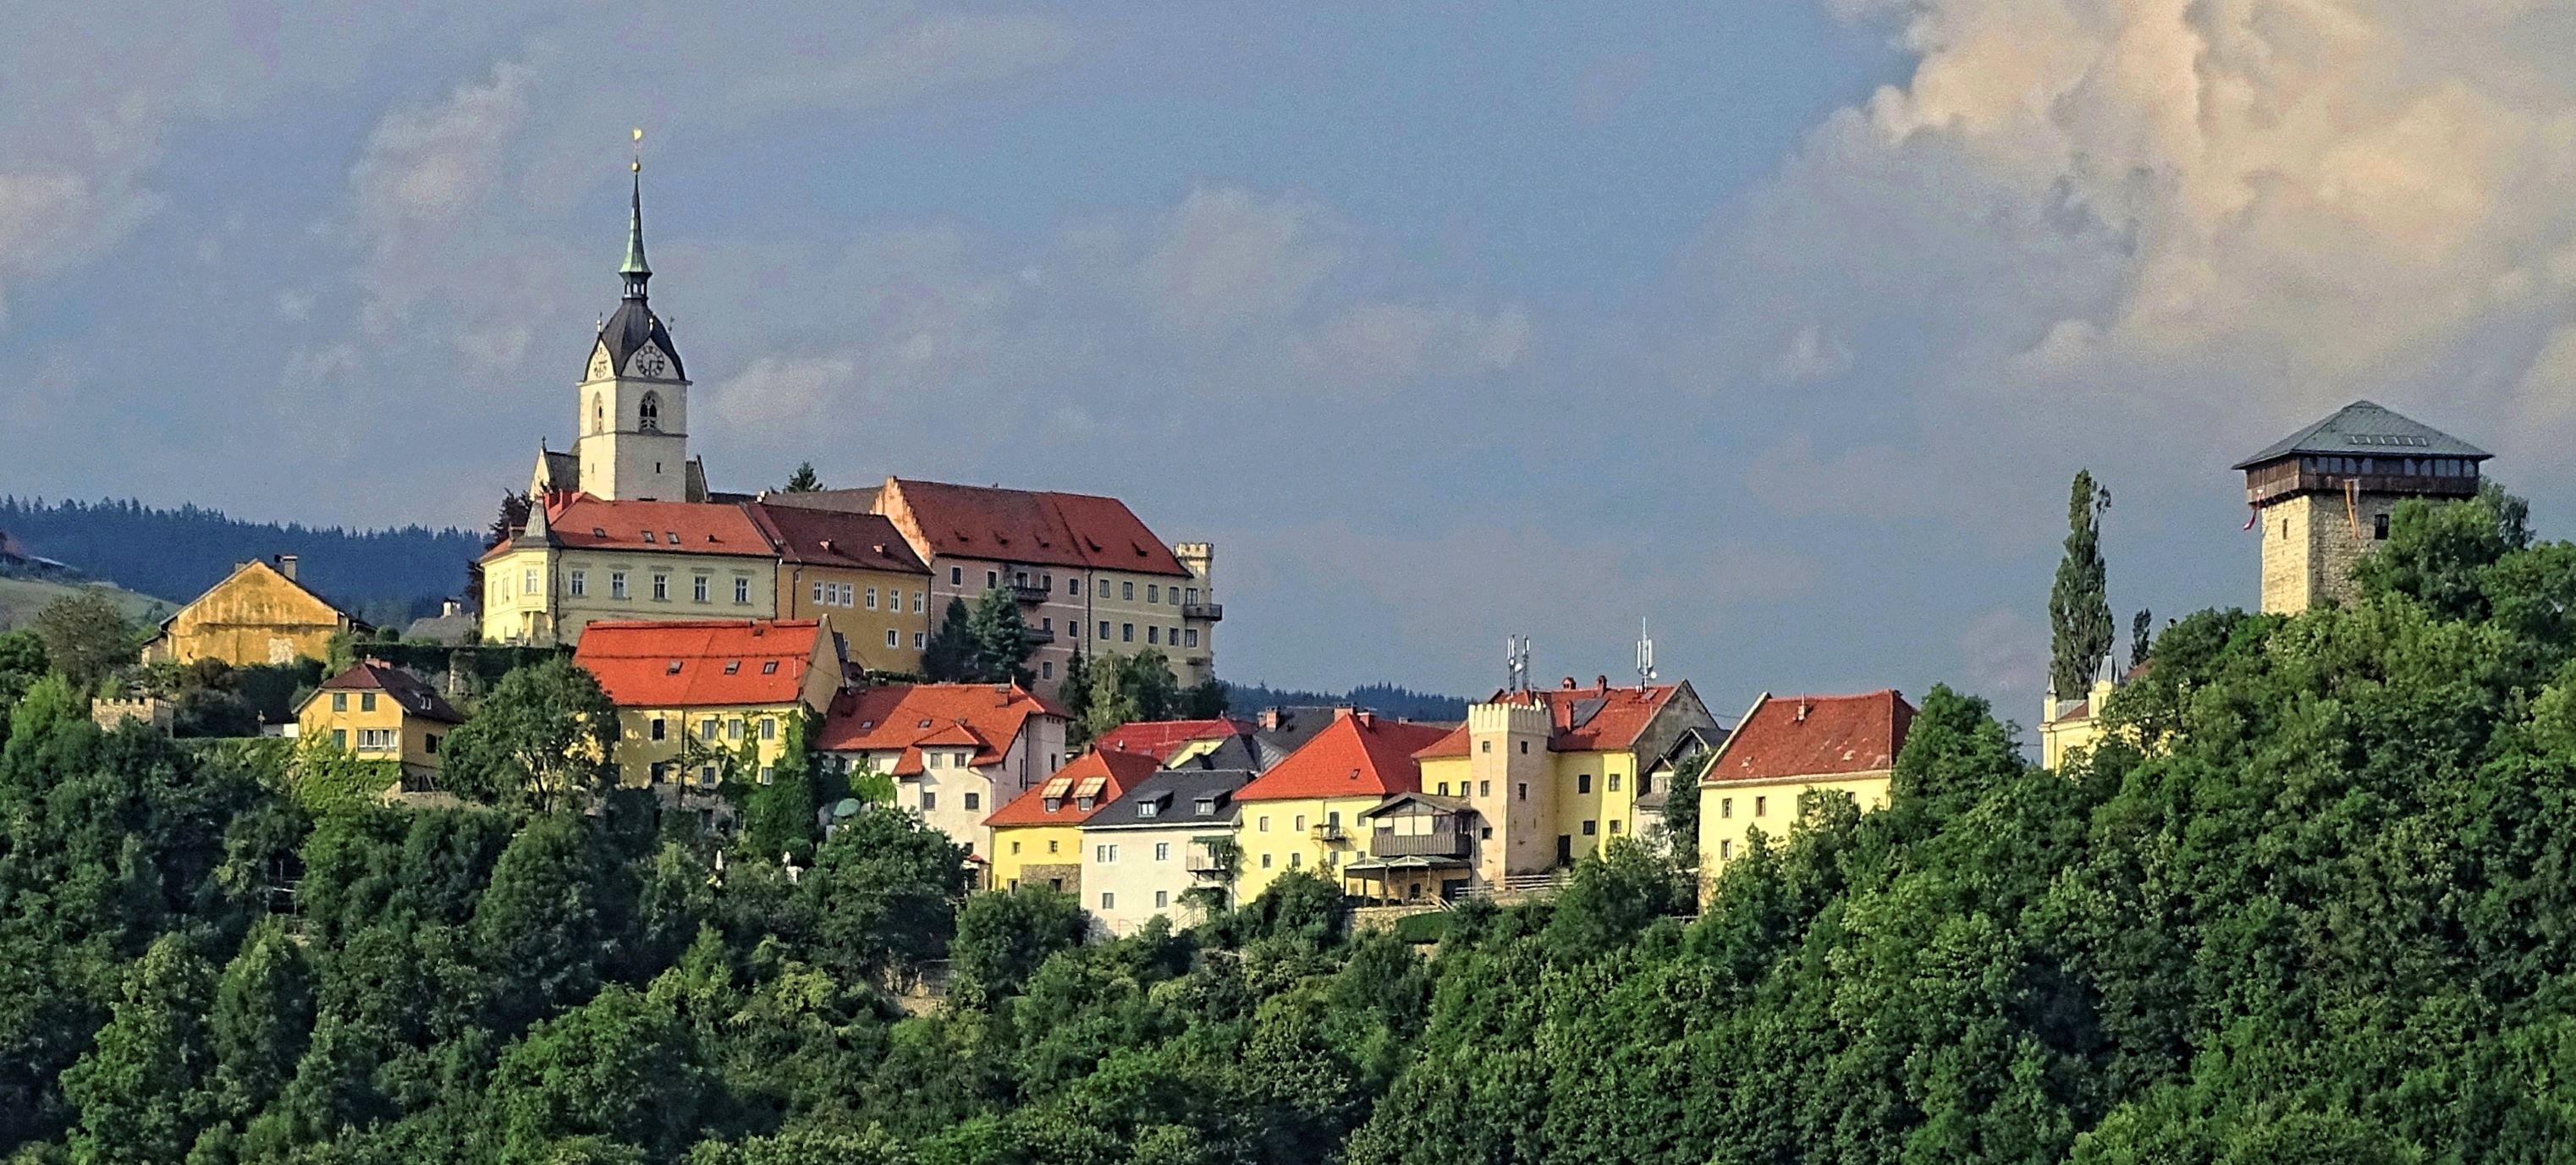 Die Bestrahlung der einzigartigen Silhouette der Altstadt von Althofen wird künftig mittels Solarzeitschaltuhren gesteuert (Foto: Thomas Schulz)